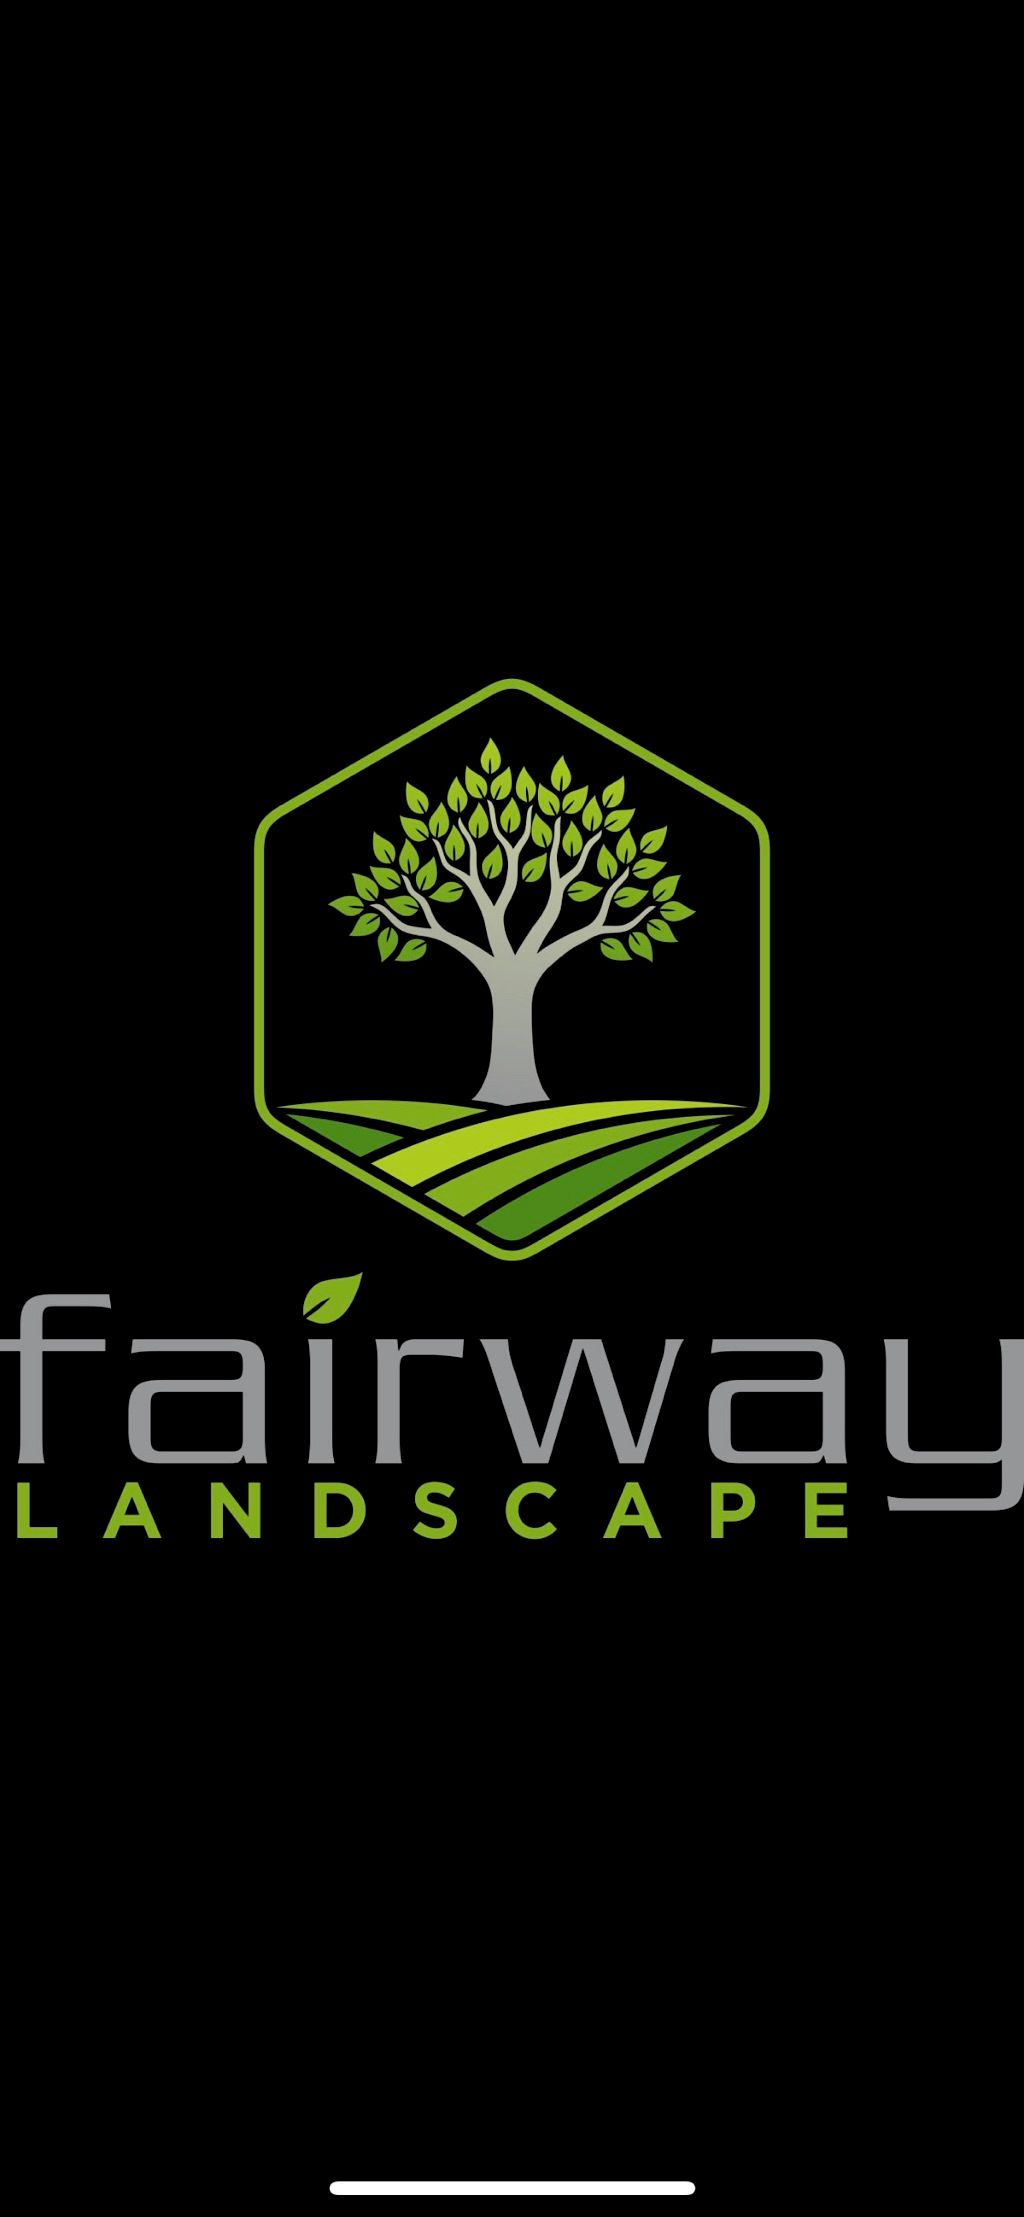 Fairway Landscape